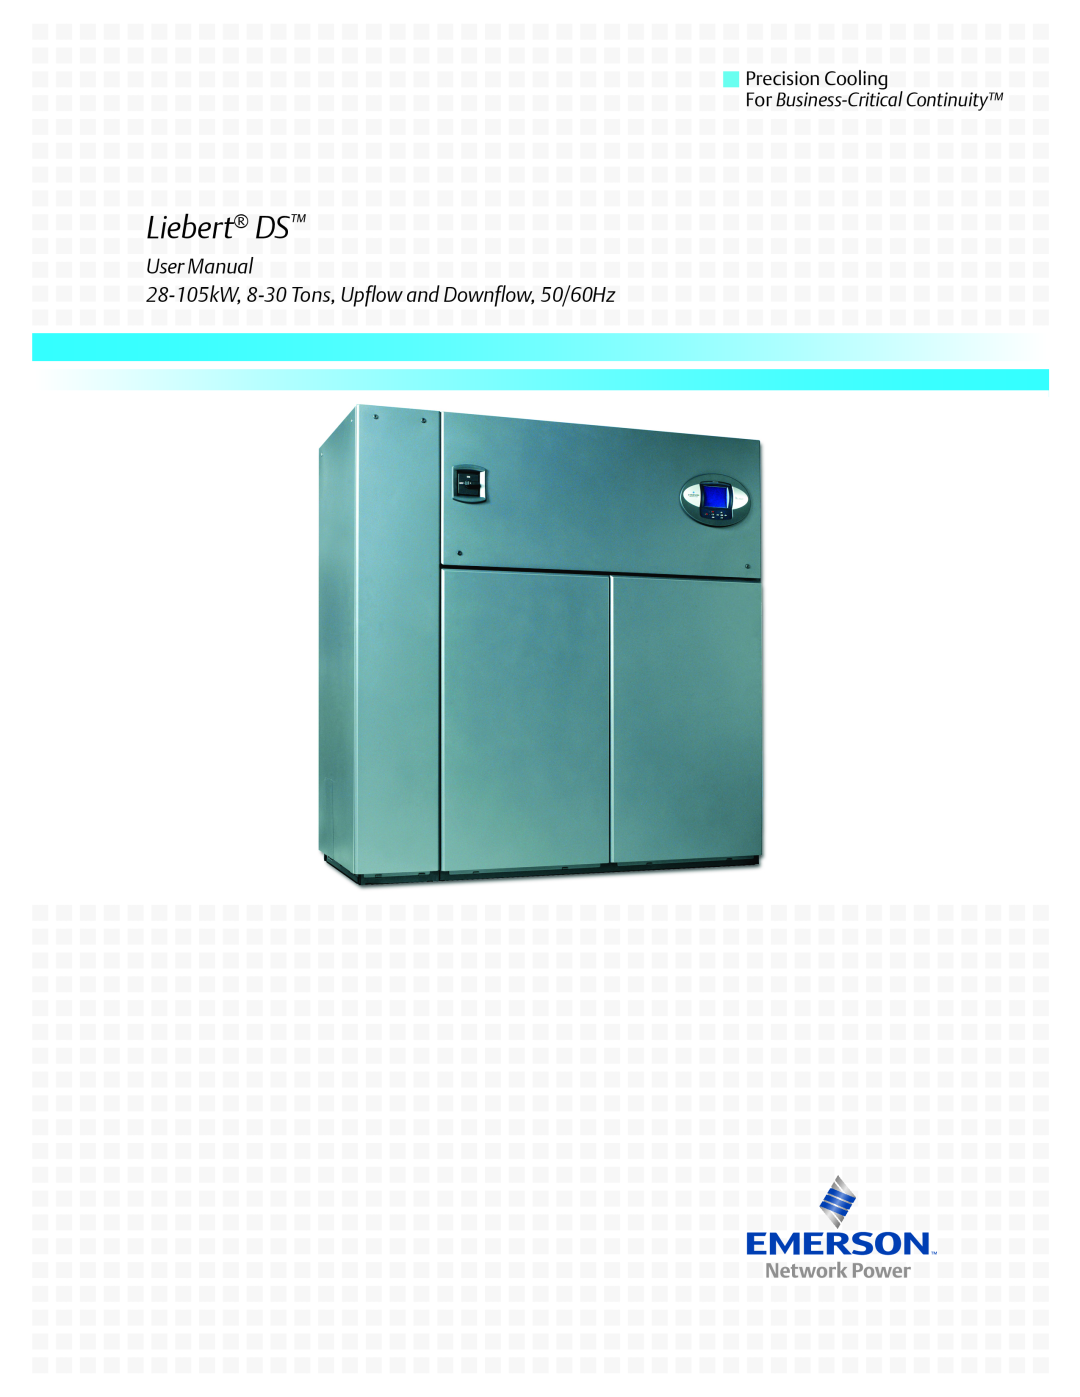 Liebert user manual Liebert DS, User Manual 28-105kW, 8-30 Tons, Upflow and Downflow, 50/60Hz 